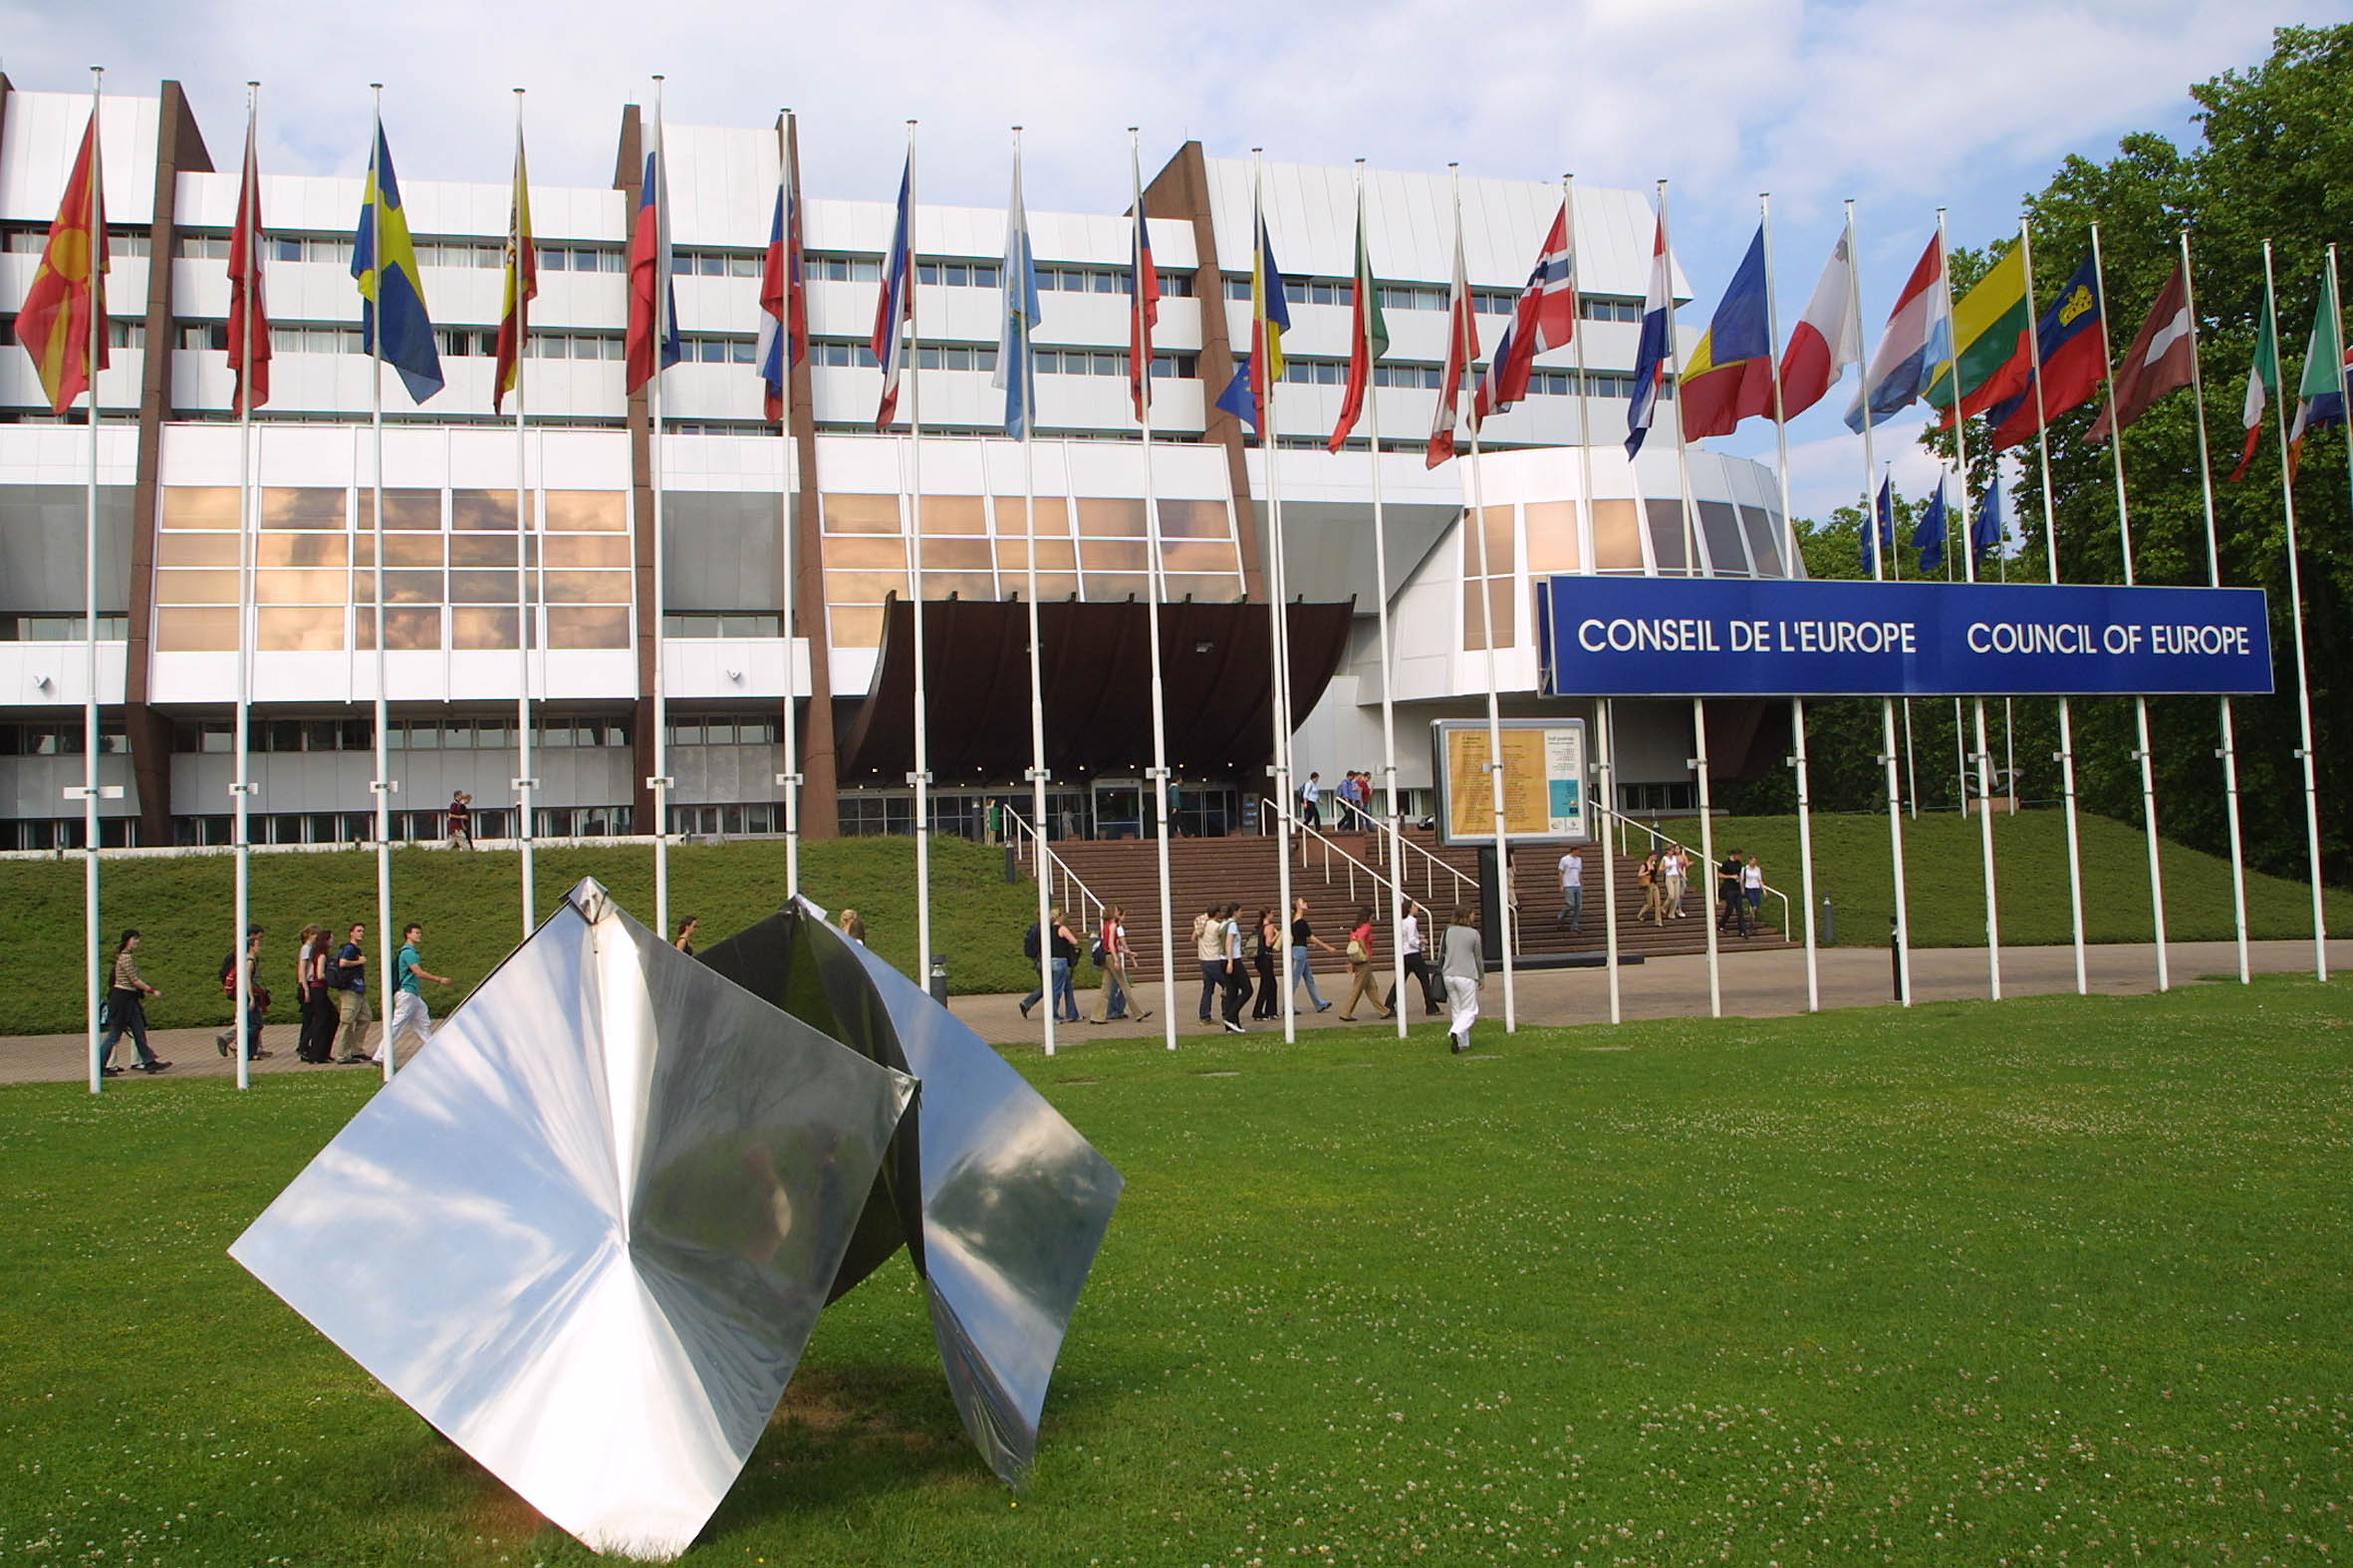 47 ország képviselői tanácskoznak a többnyelvűségről - Az Európa Tanács konferenciája Bálványosfürdőn